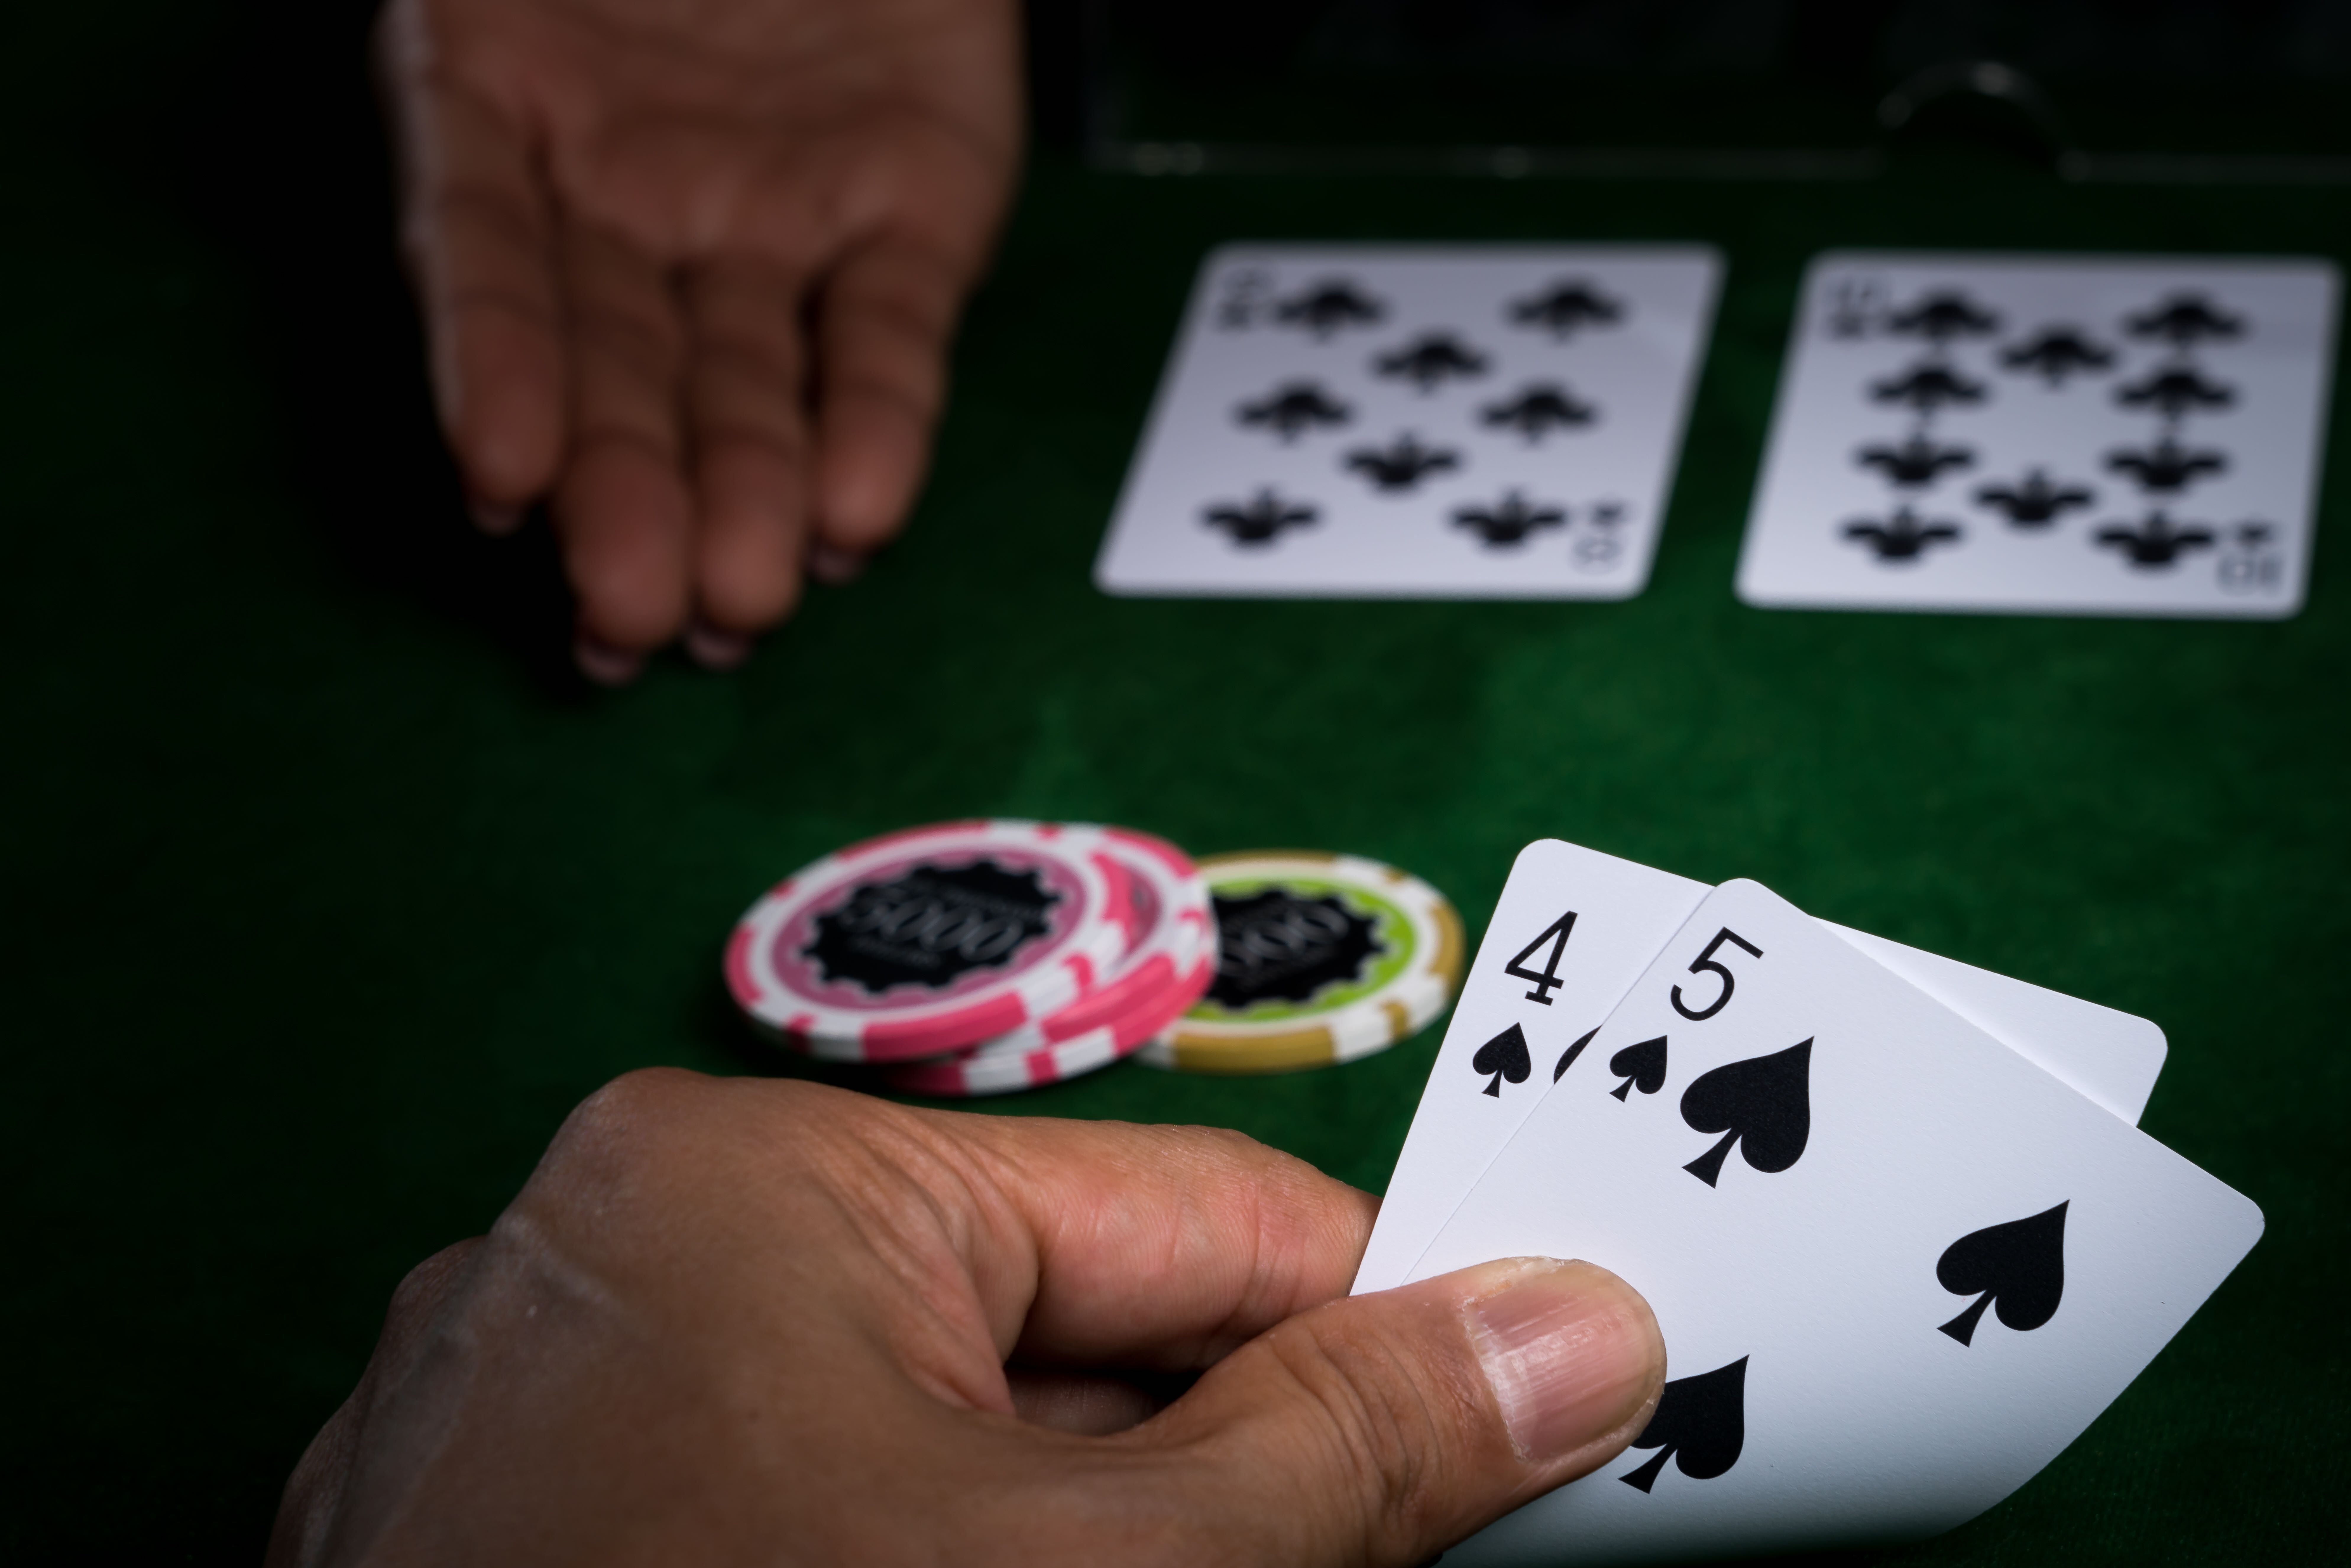 reno casinos with surrender in blackjack